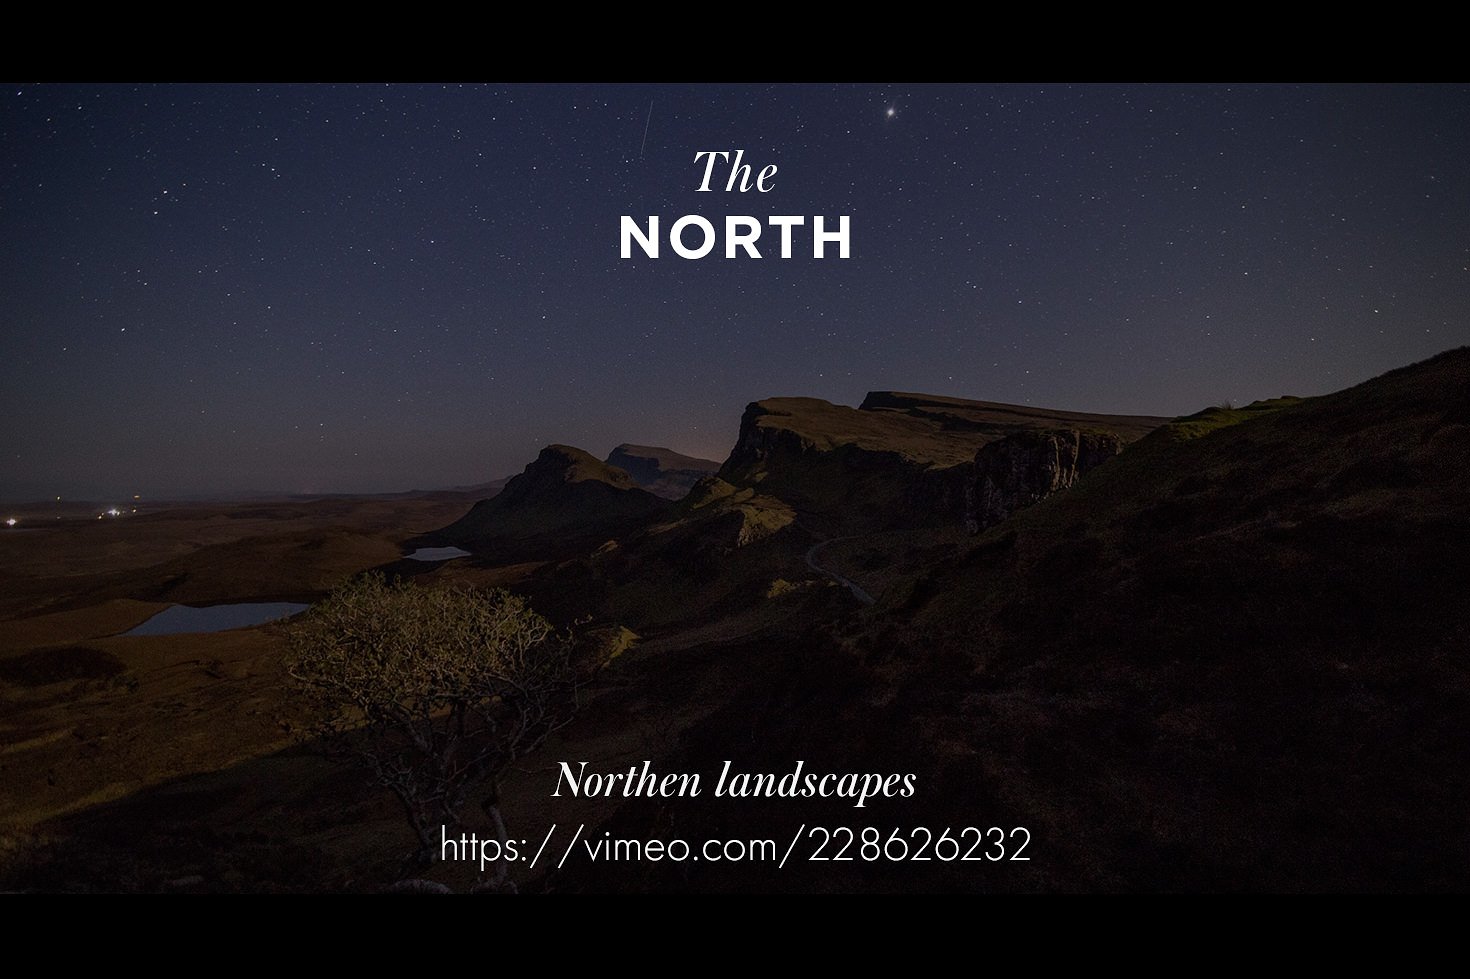 户外拍摄照片设计素材The North - timelaps